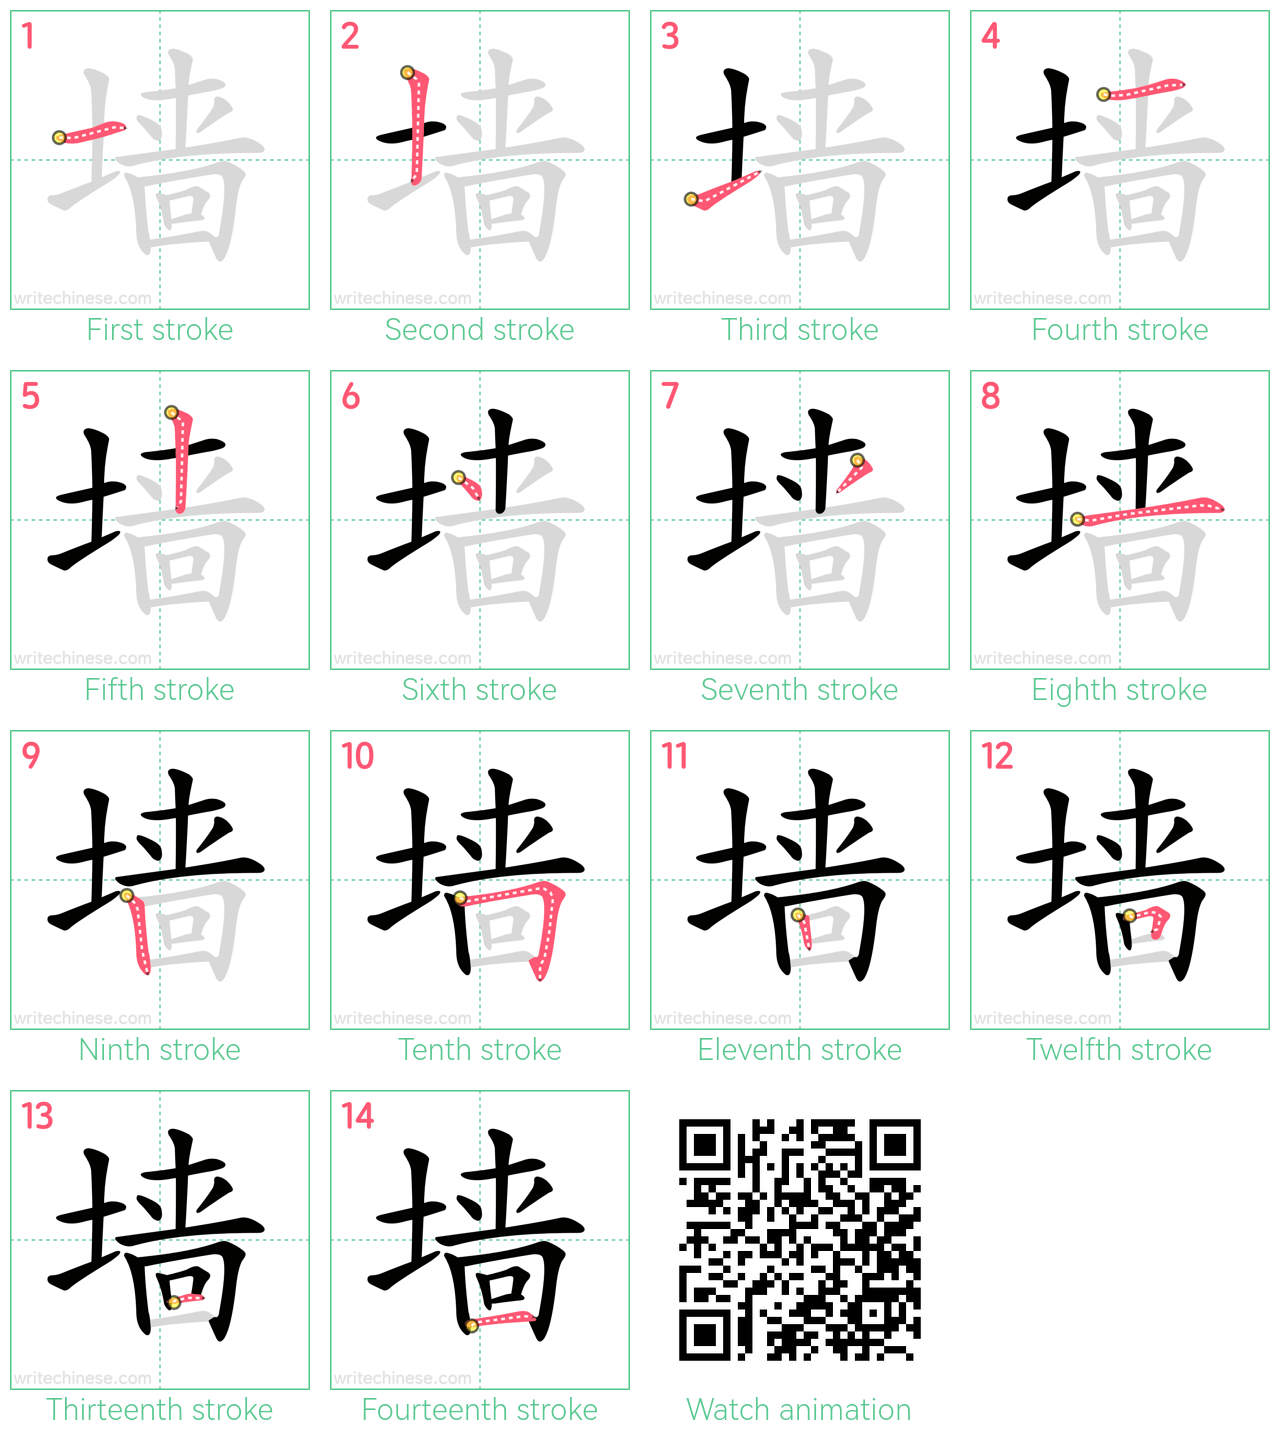 墙 step-by-step stroke order diagrams